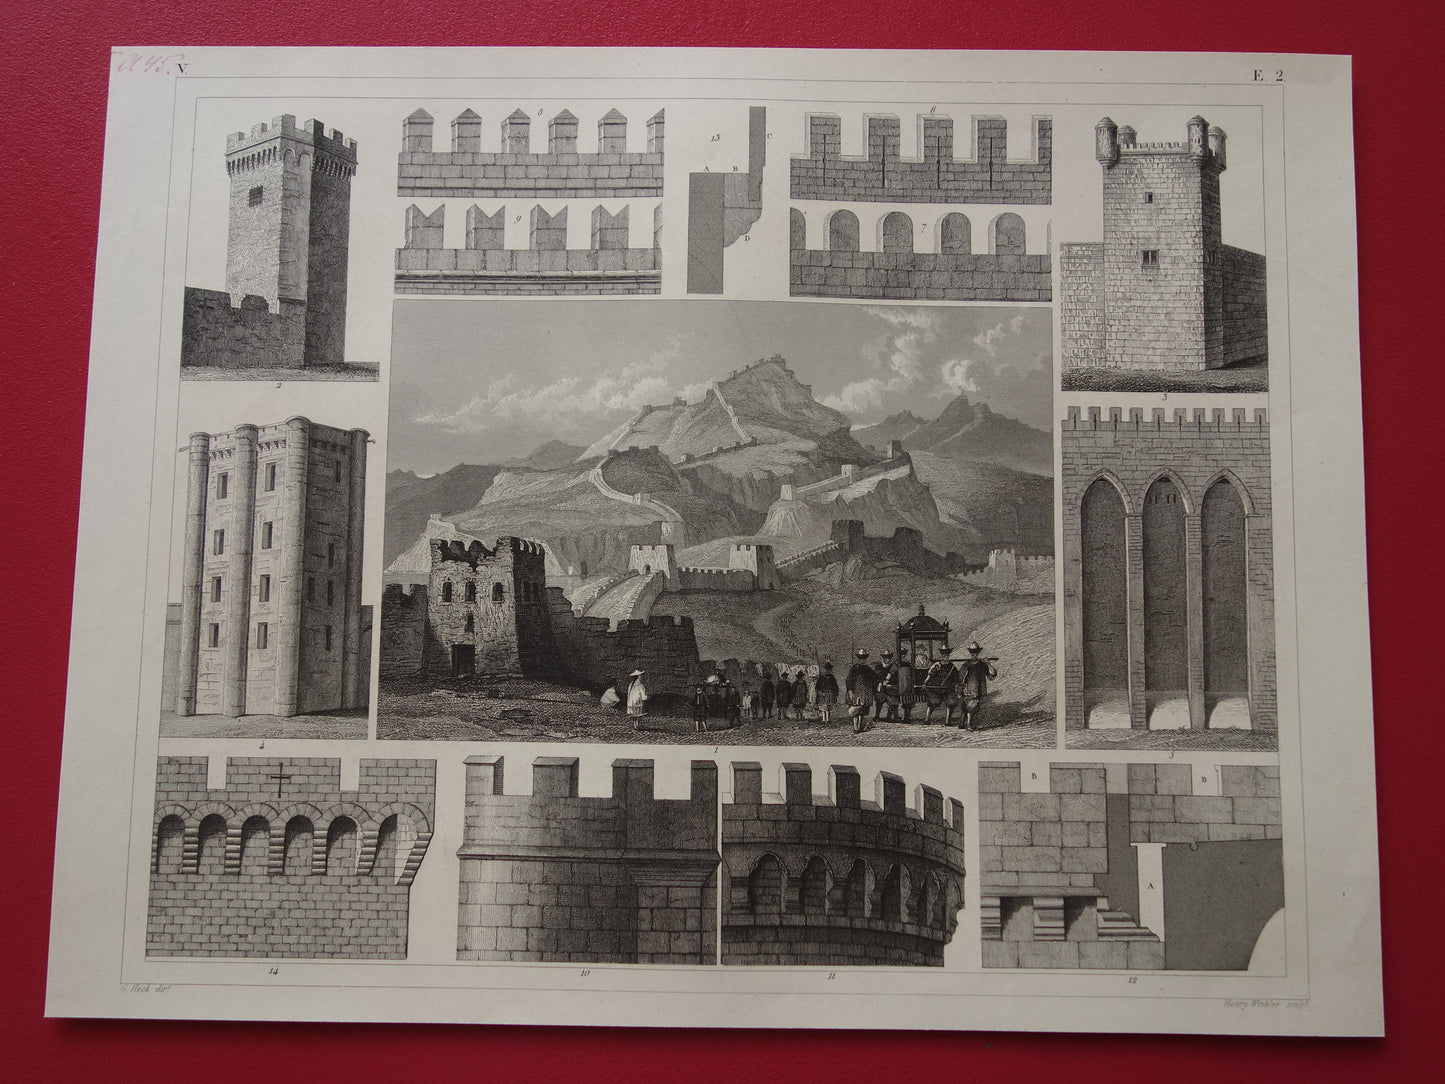 Oude militaire print van stadsmuren en grote muur van China originele antieke illustratie uit 1849 torens vestingwerken kantelen vintage prints